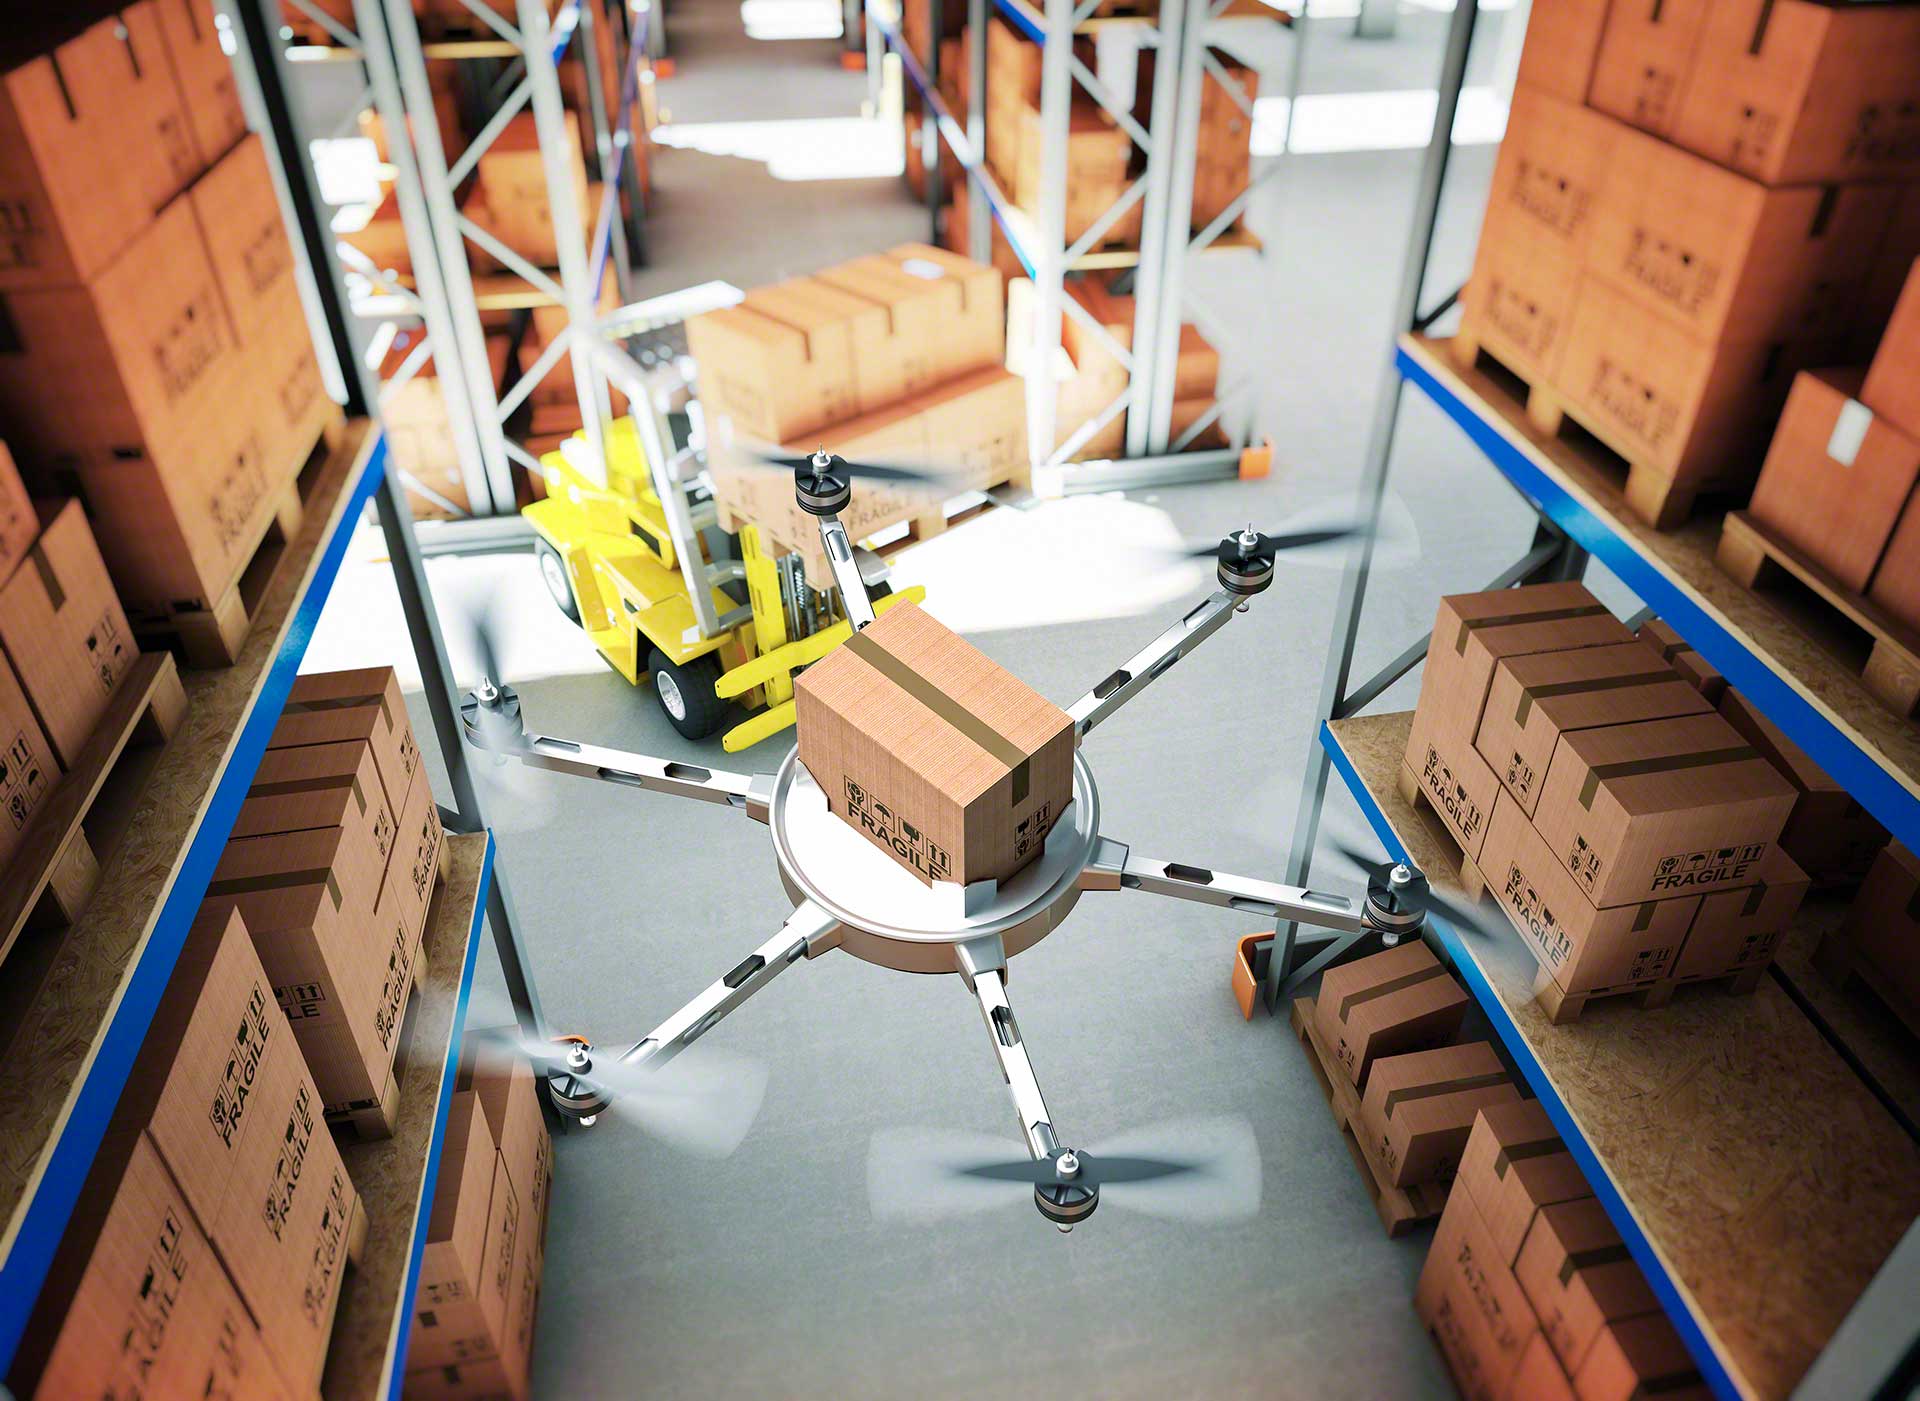 Les drones pourraient dresser l'inventaire de l'entrepôt, en vérifiant les articles stockés dans les rayonnages